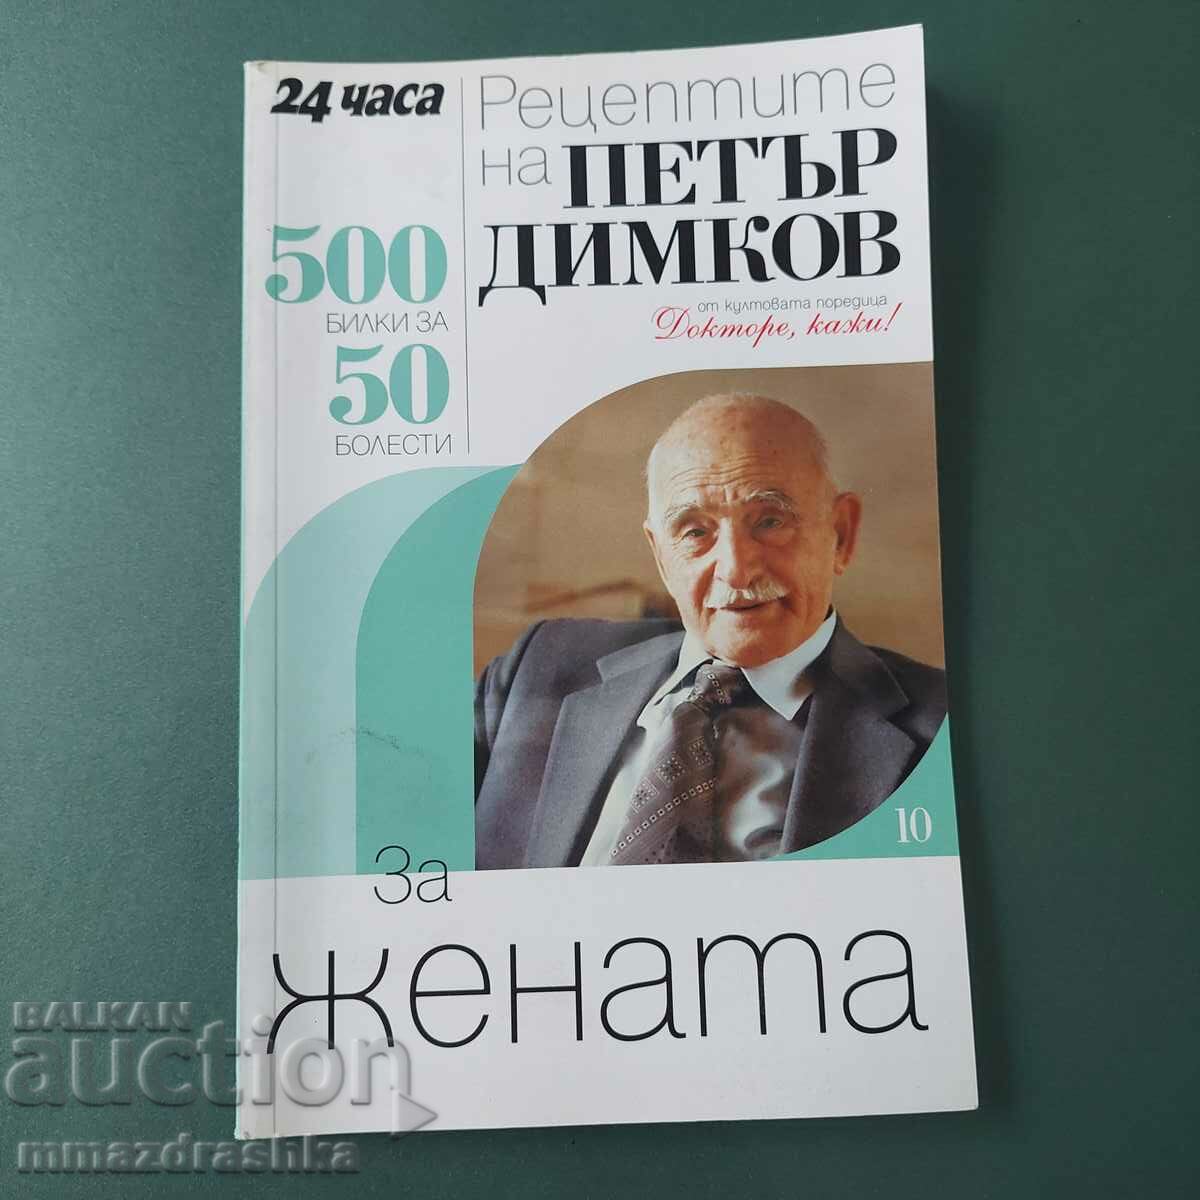 500 συνταγές για γυναίκες, Petar Dimkov